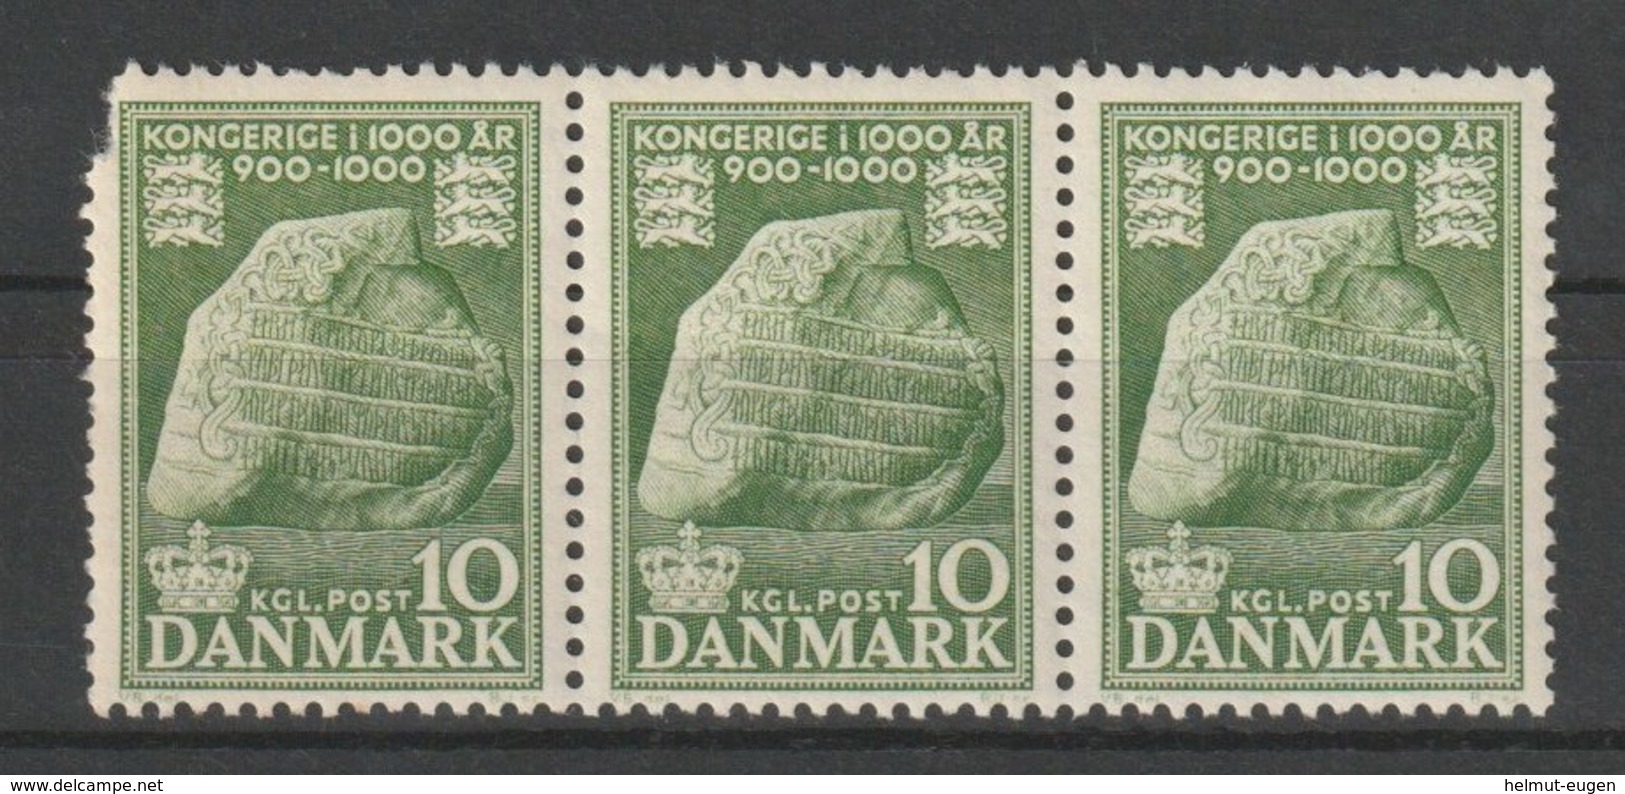 MiNr. 341 Dänemark 1953, 5. Sept./1955, 21. April. 1000 Jahre Königreich Dänemark (I). StTdr. (105); Gez. K 12. - Ungebraucht